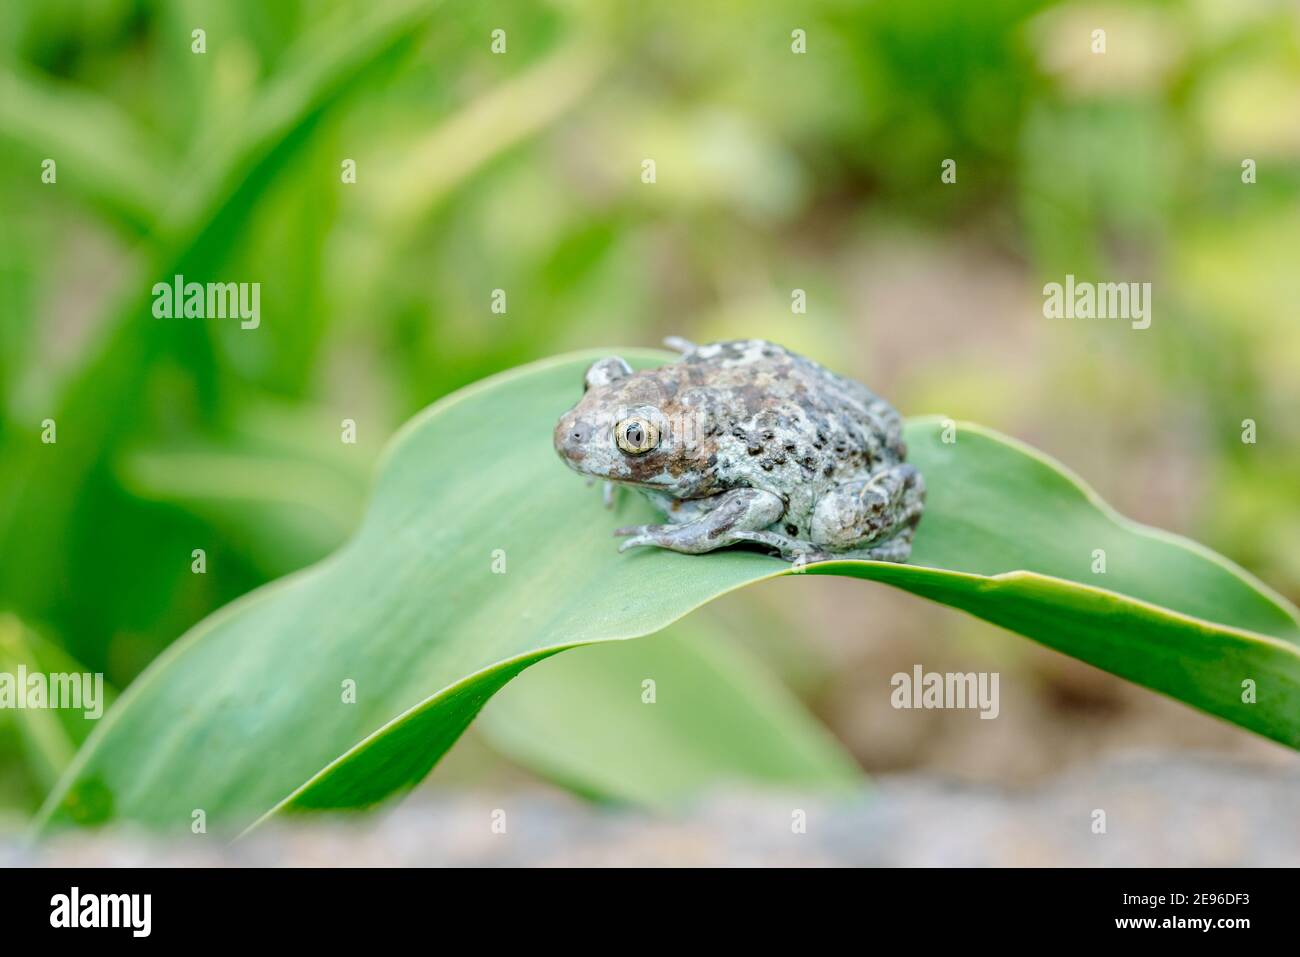 Dumpy Frogs Sitting on a Flower. Amphibian on a flower. green background blues bokehBeautiful summer card. Stock Photo